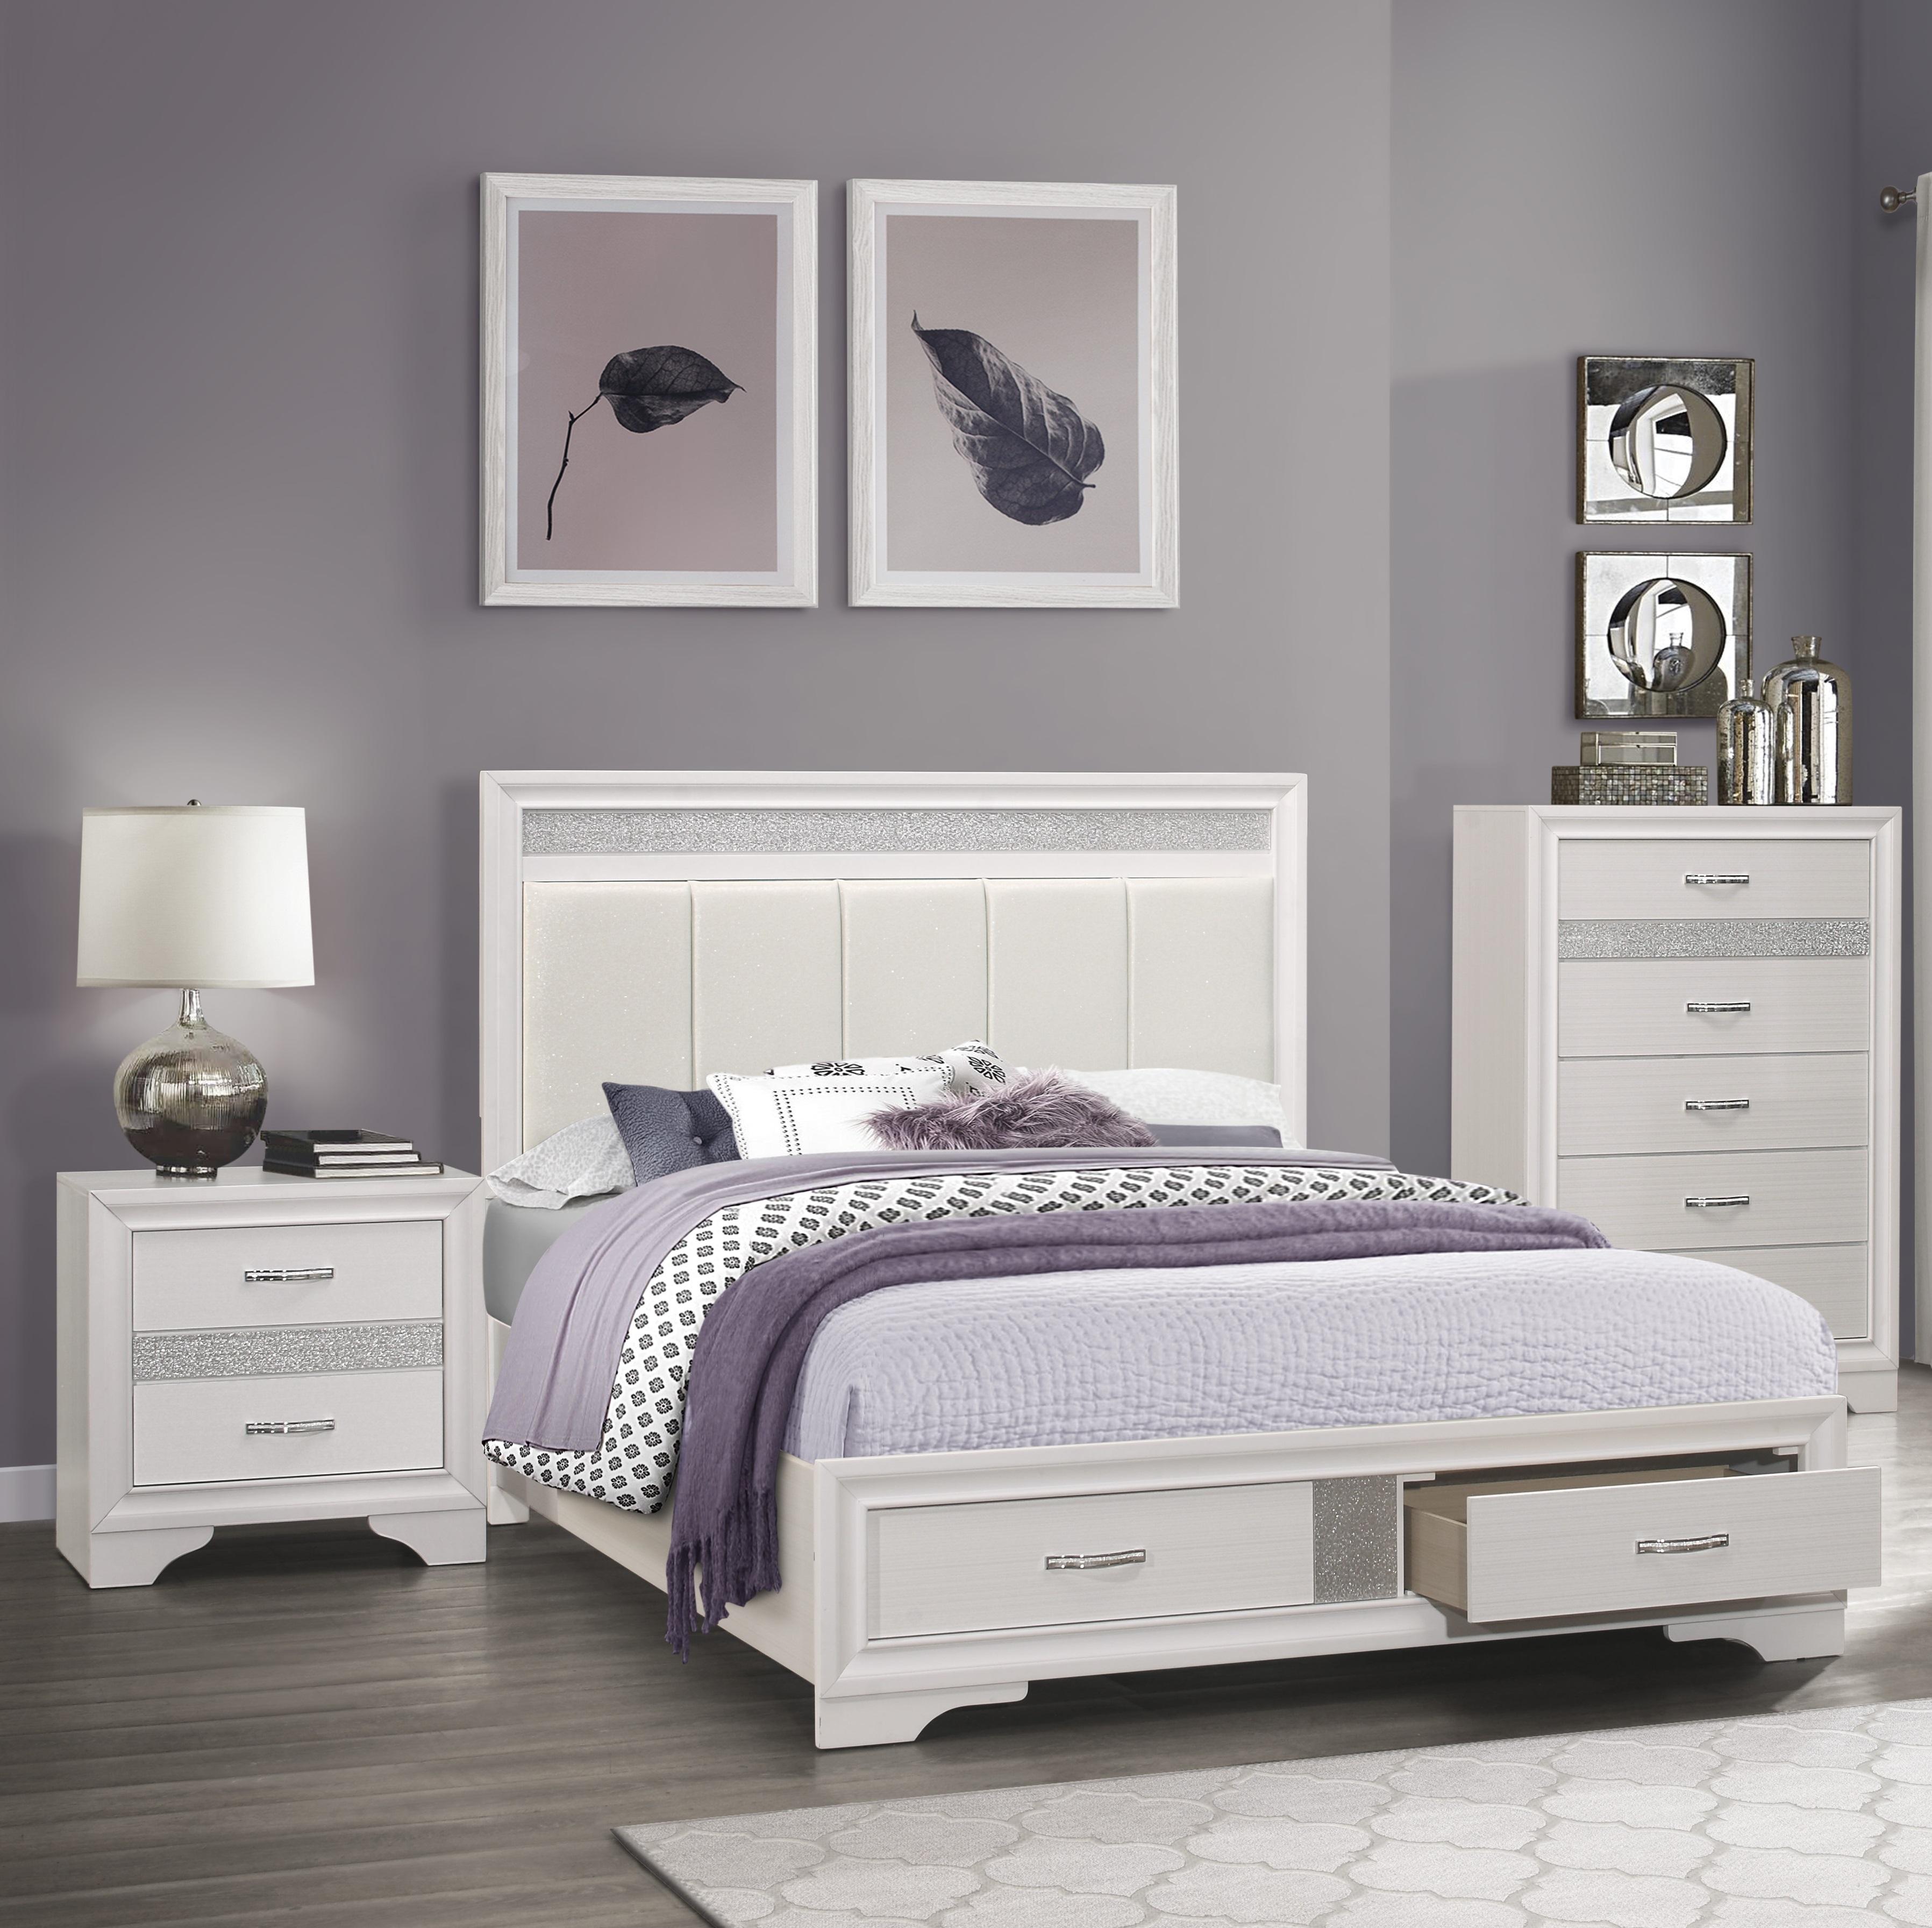 

    
Glam White & Silver Glitter Wood King Bedroom Set 3pcs Homelegance 1505WK-1EK* Luster
